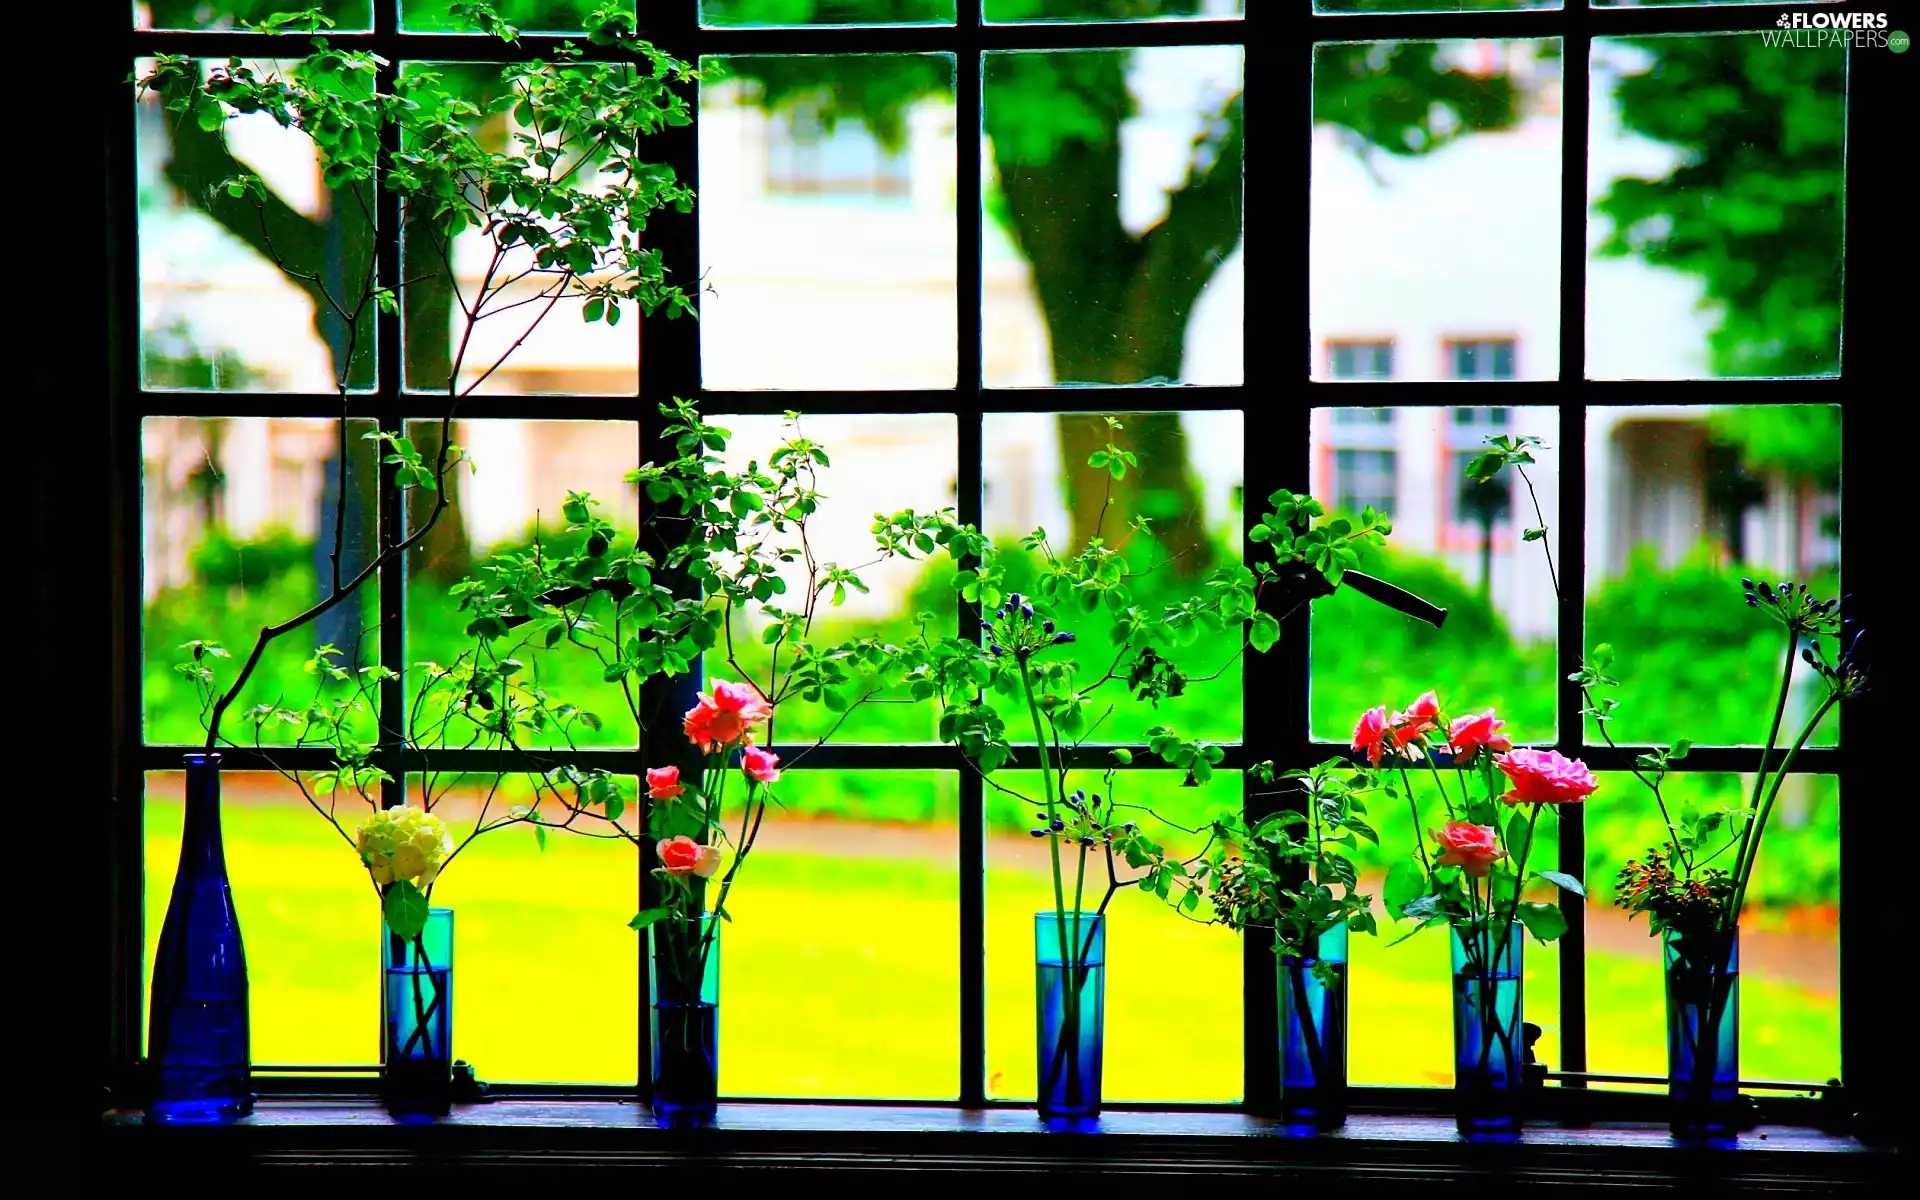 roses, View, vases, Plants, Window